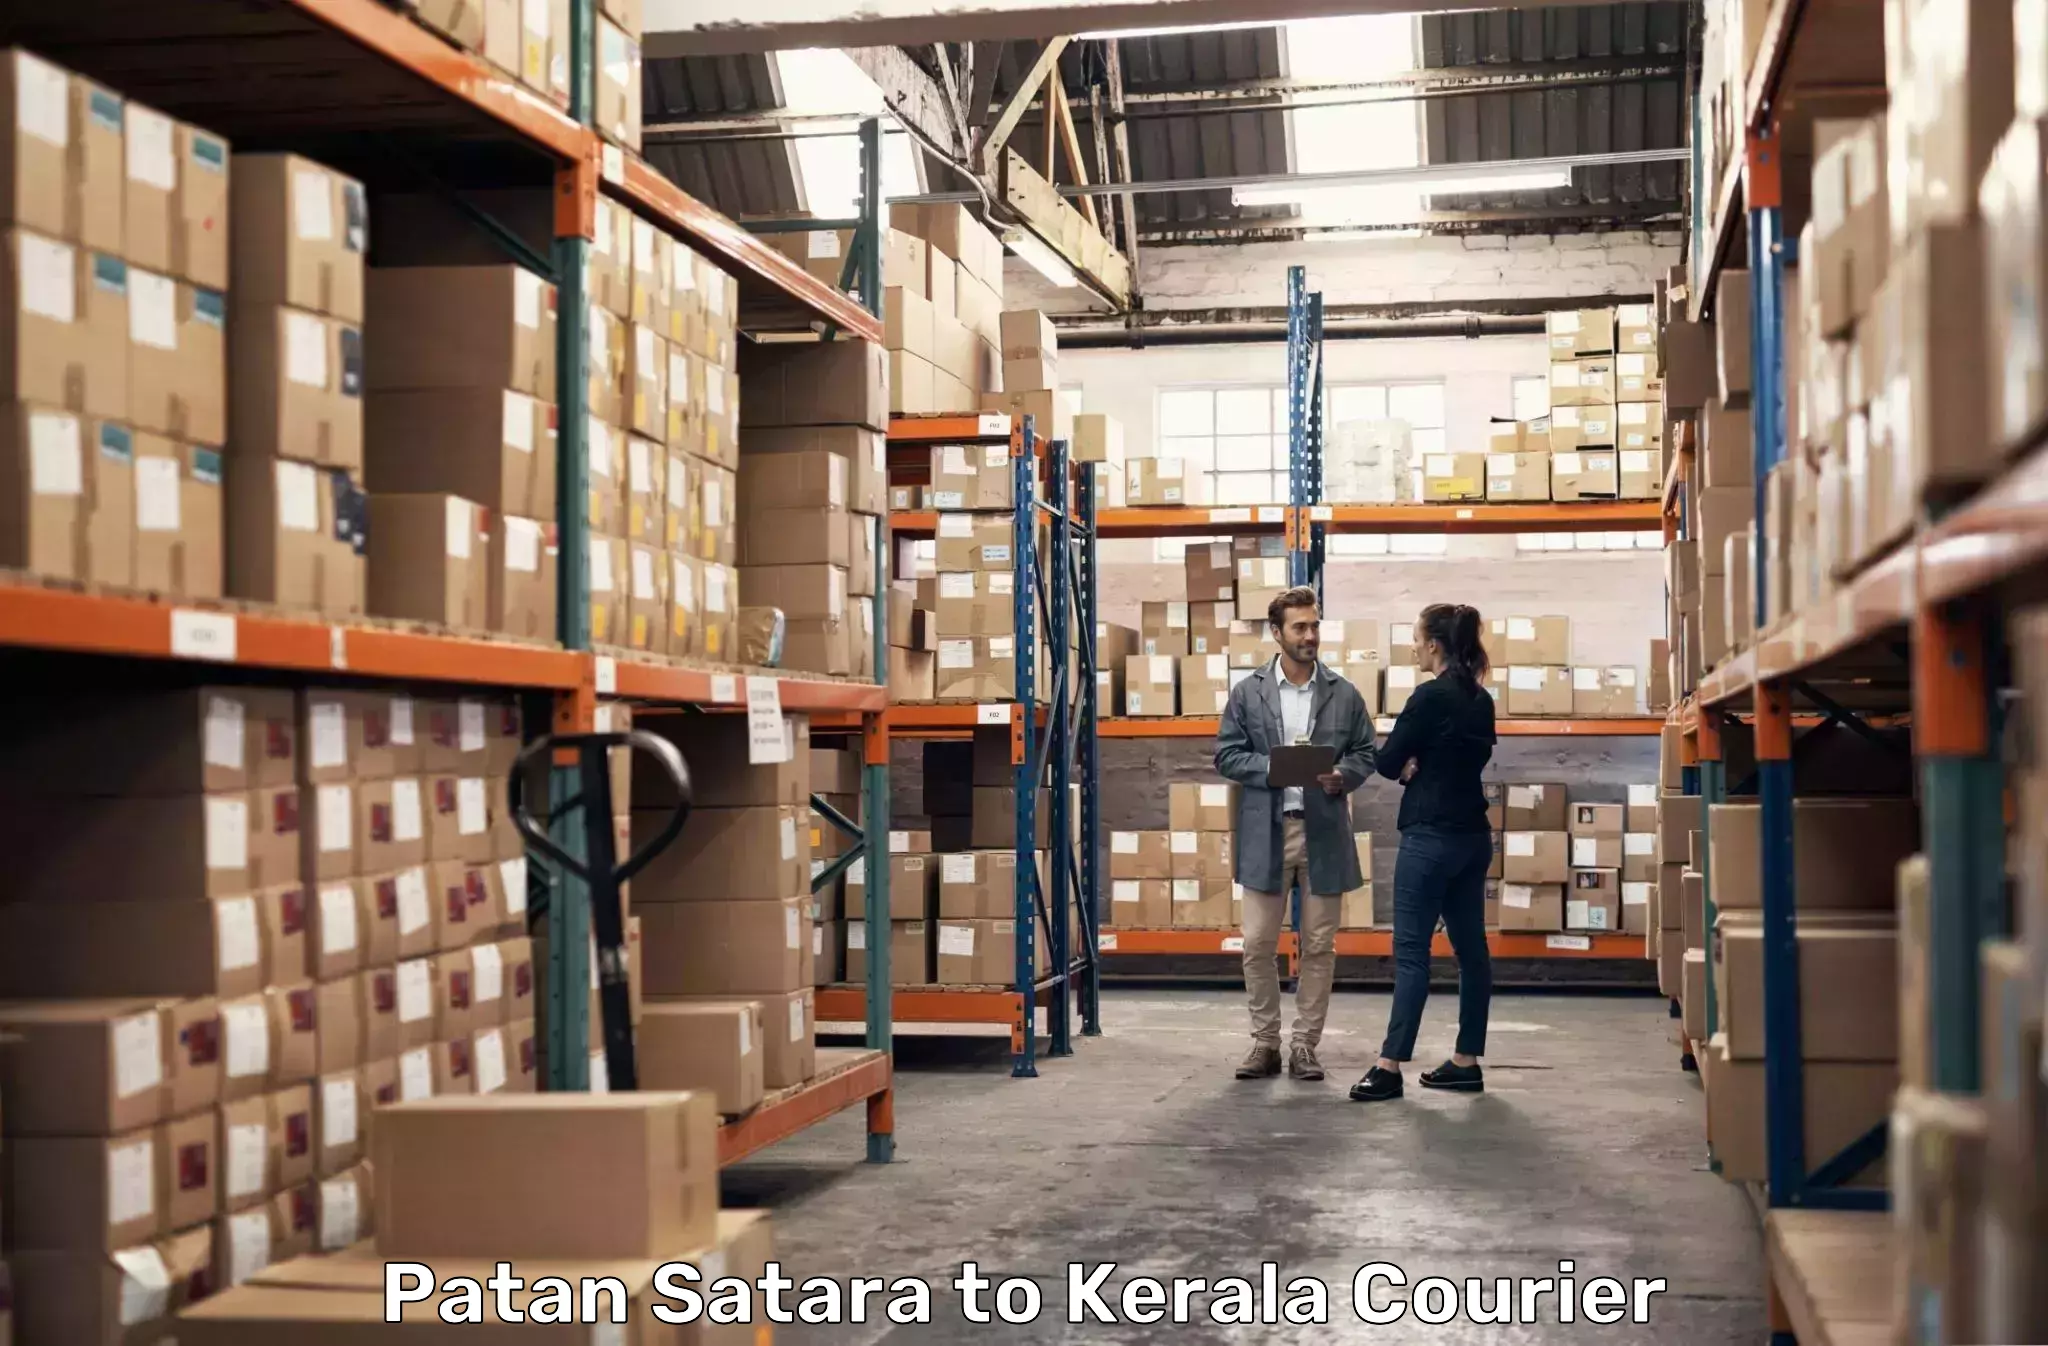 Express logistics Patan Satara to Kerala